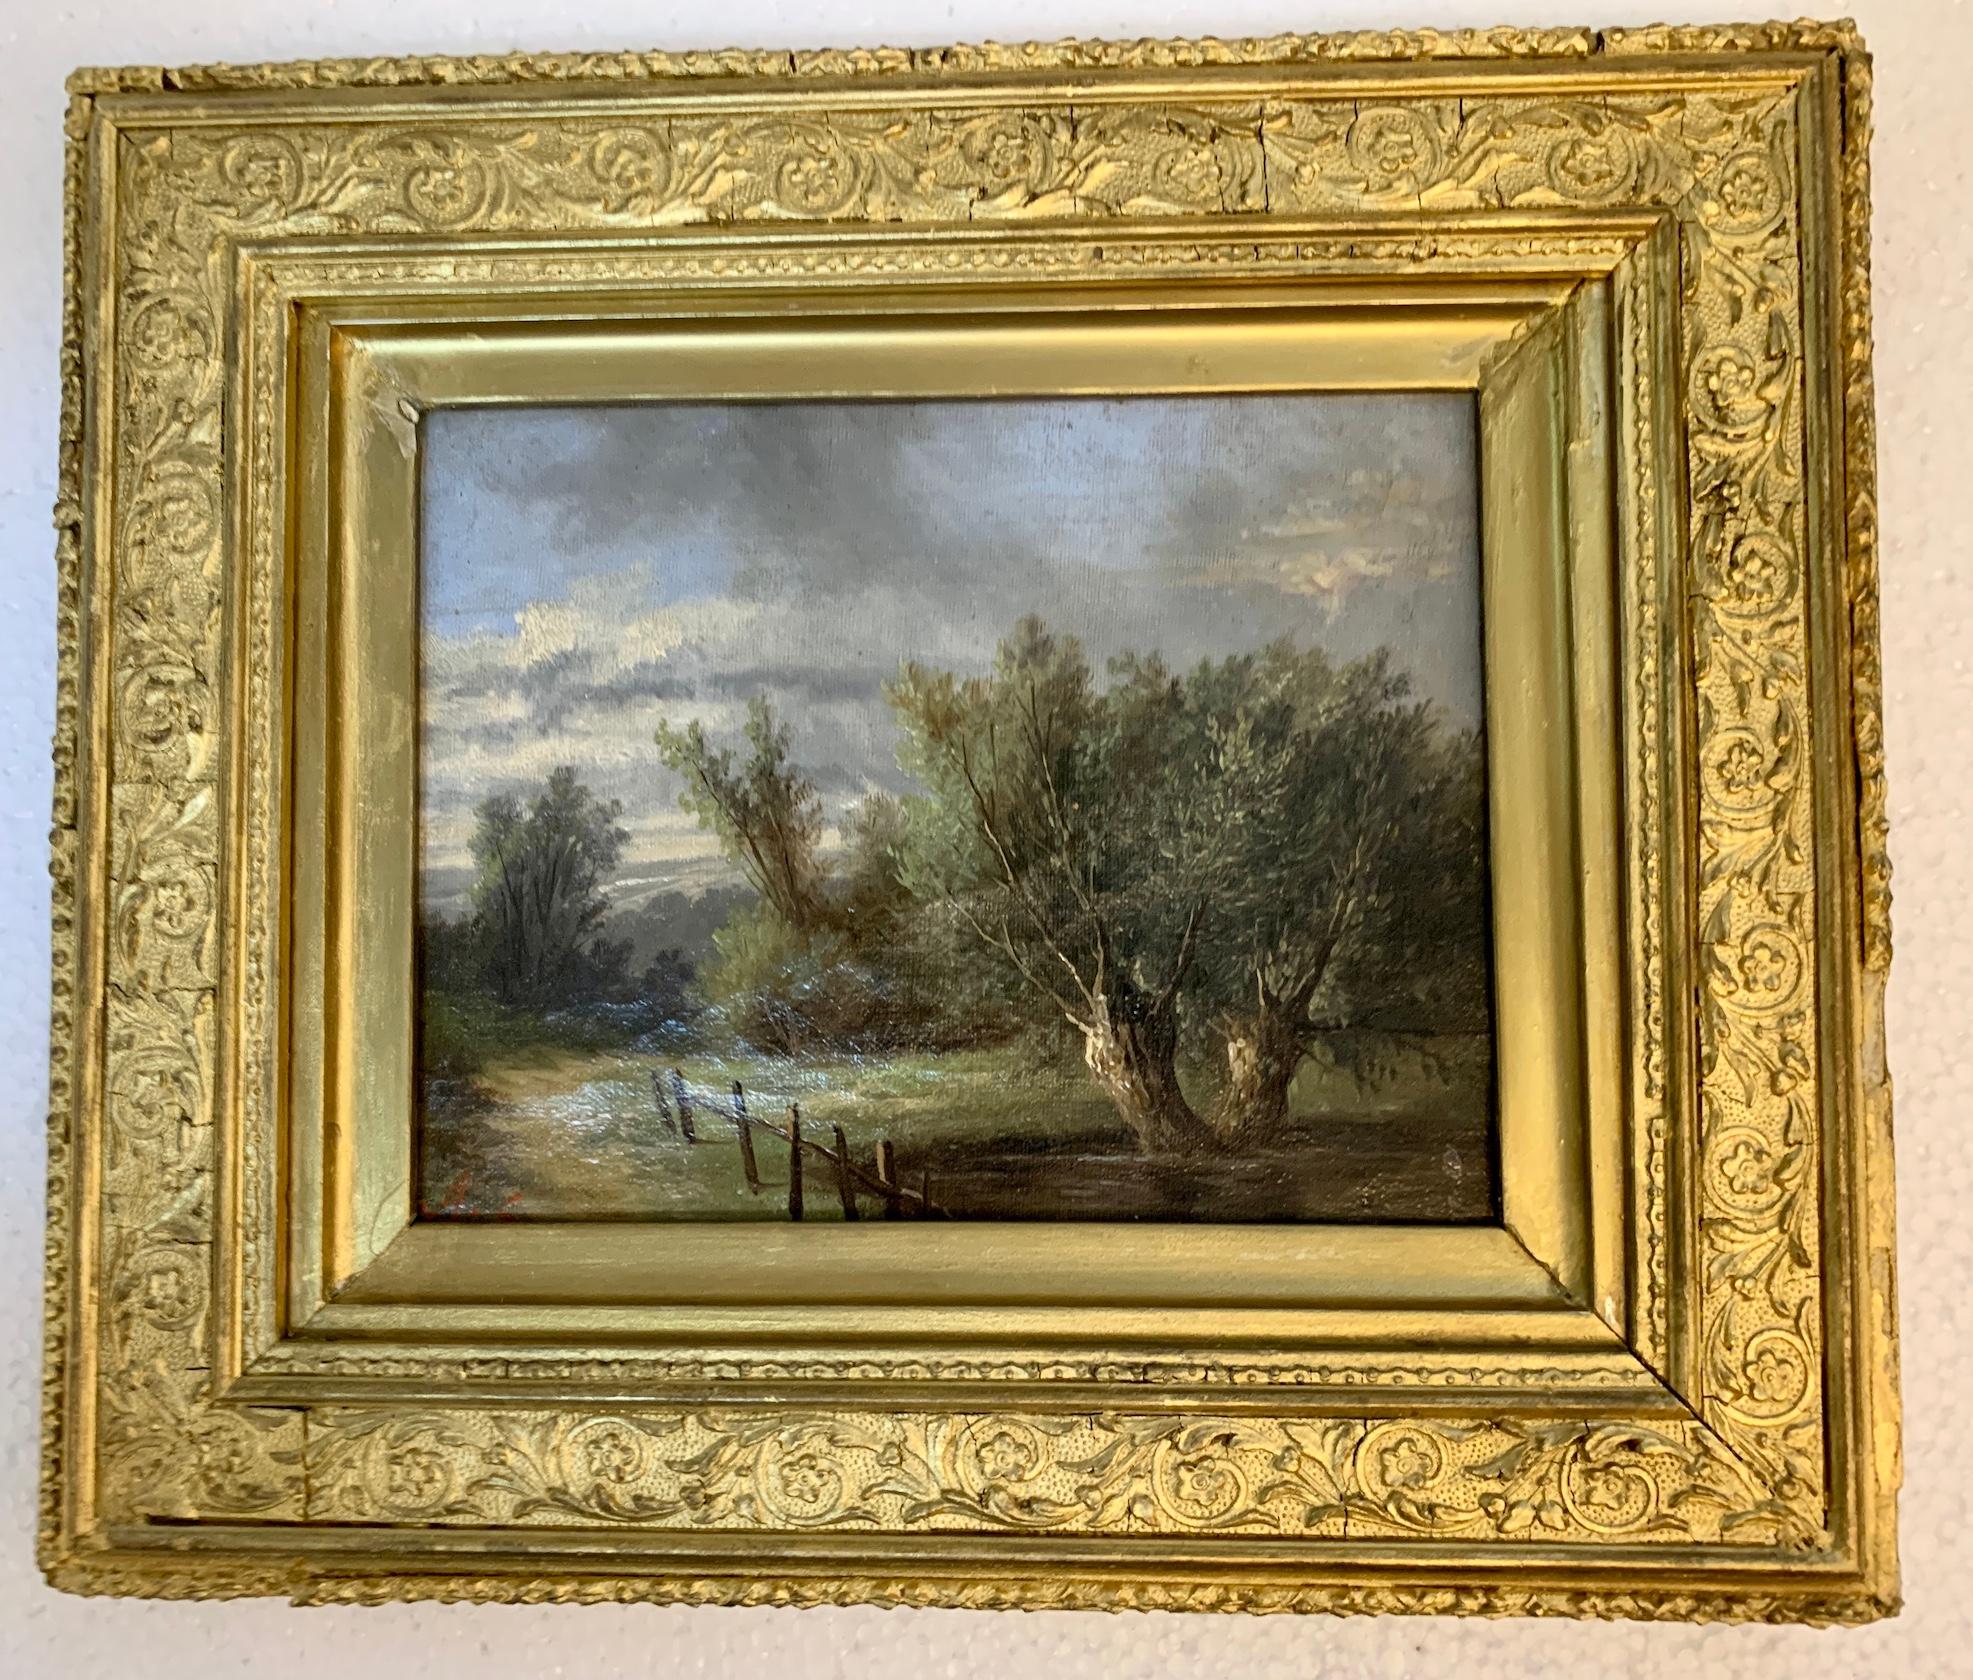 Ada Stone Landscape Painting – Englische Landschaft des 19. Jahrhunderts mit Eichenholz- und Eichenholzbäumen auf einem Weg